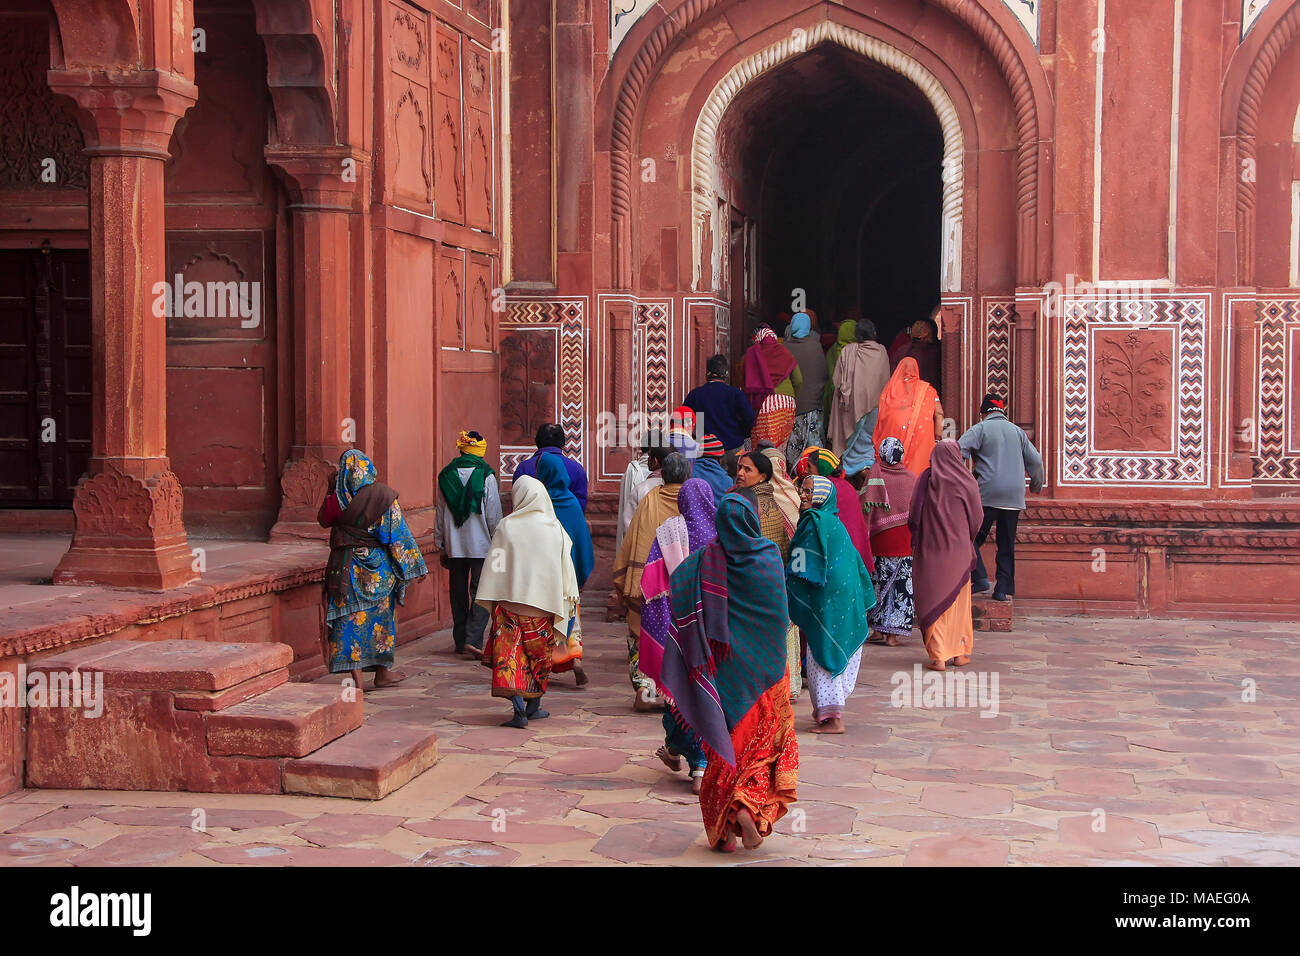 Gruppo di persone che camminano al Taj Mahal complesso in Agra, Uttar Pradesh, India. Taj Mahal è stato designato come un Sito Patrimonio Mondiale dell'UNESCO nel 1983. Foto Stock